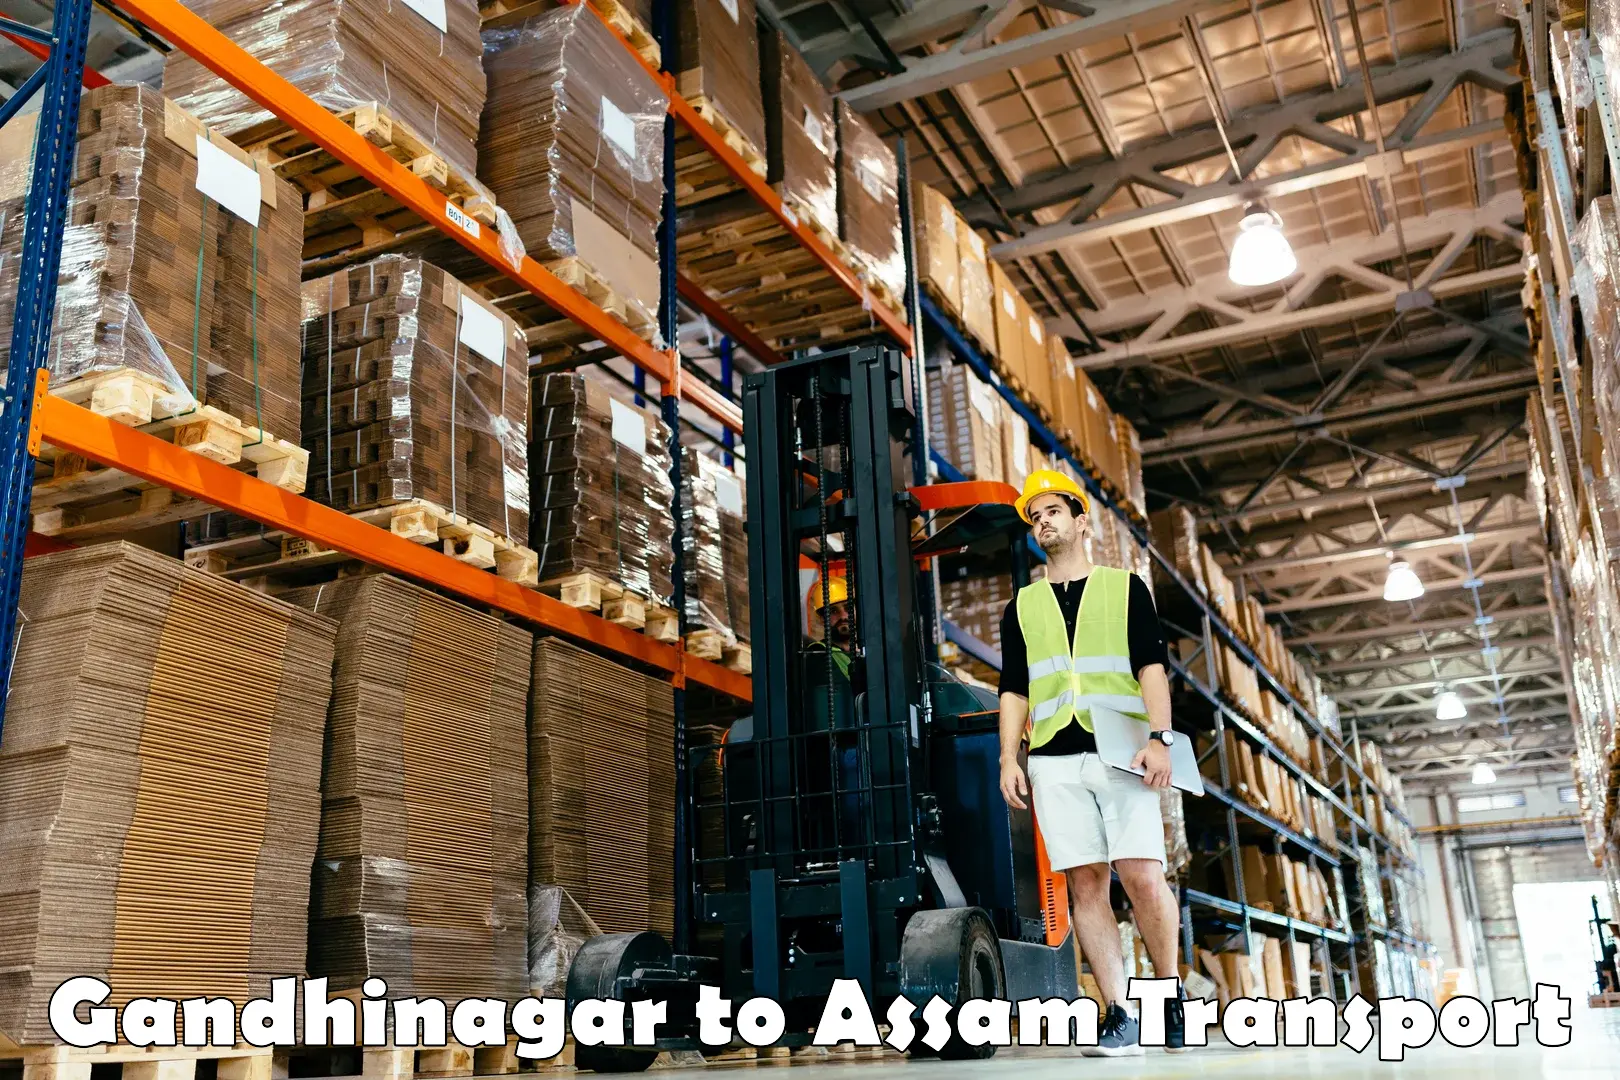 Two wheeler parcel service Gandhinagar to Assam